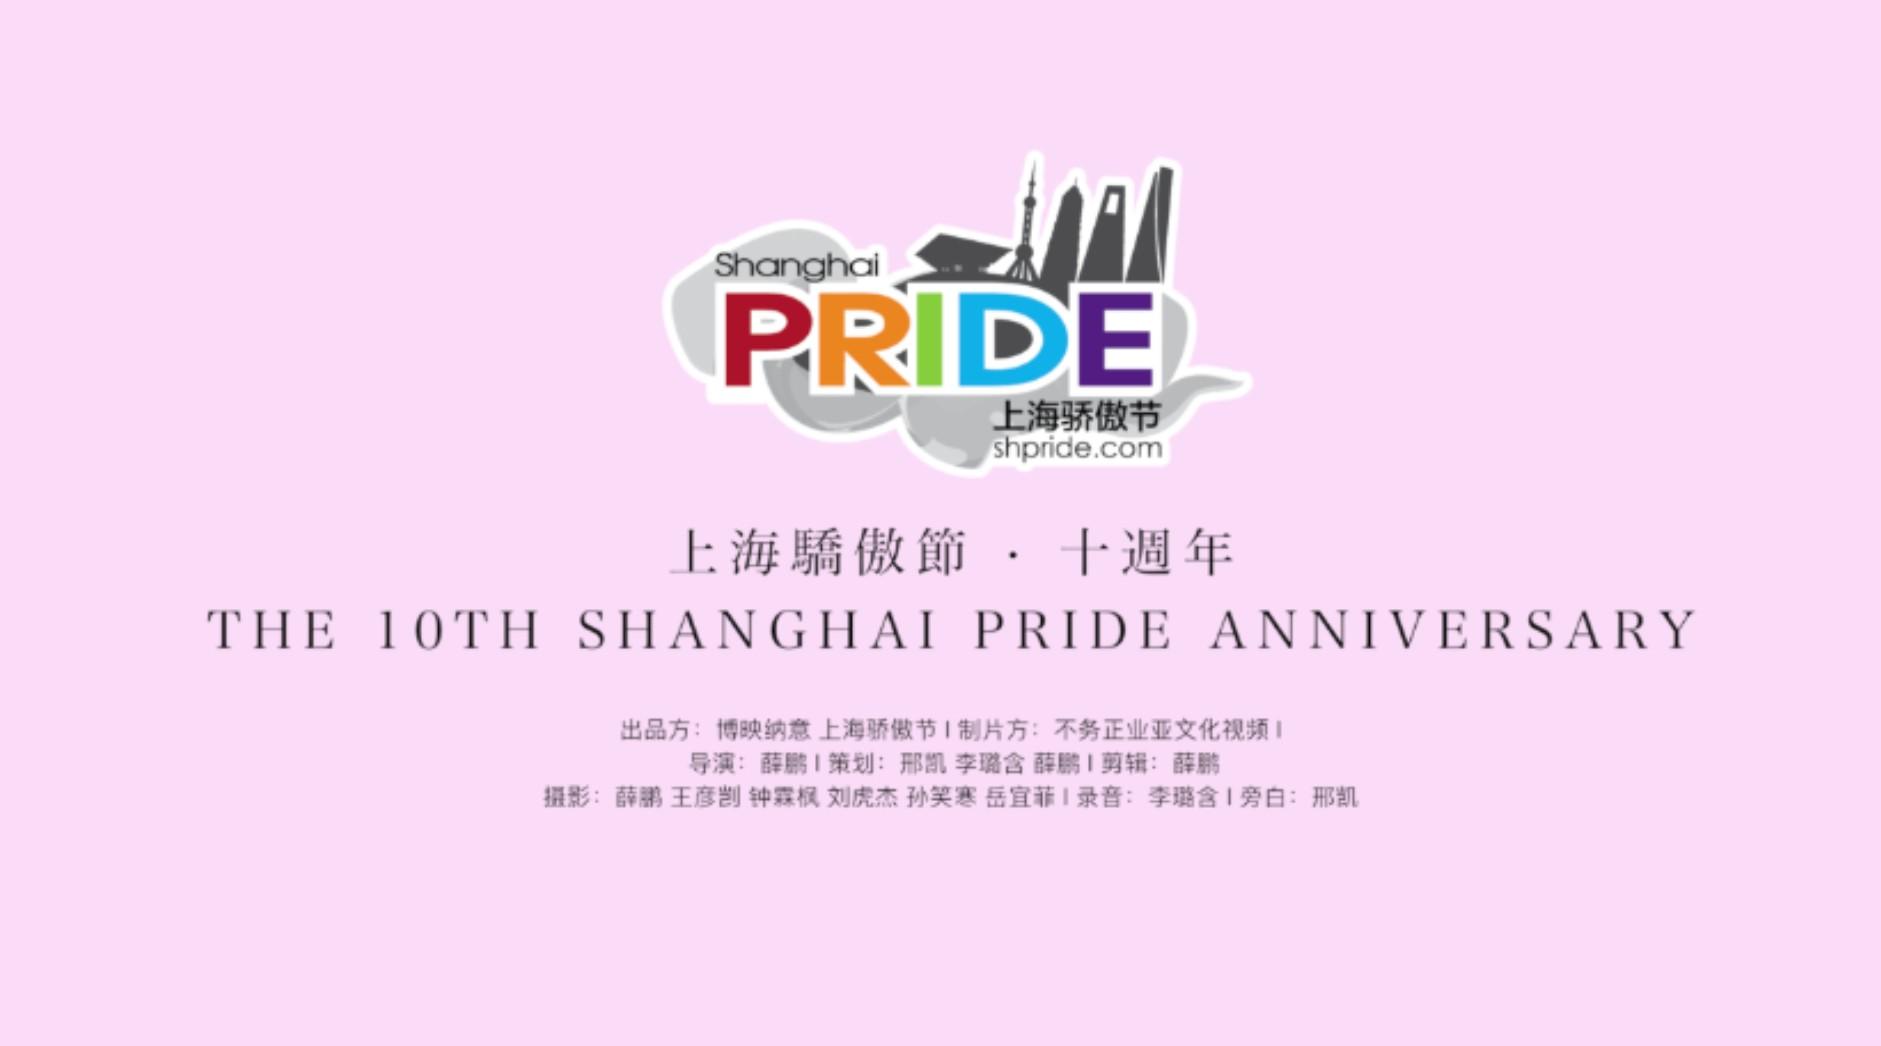 上海骄傲节十周年现场纪实